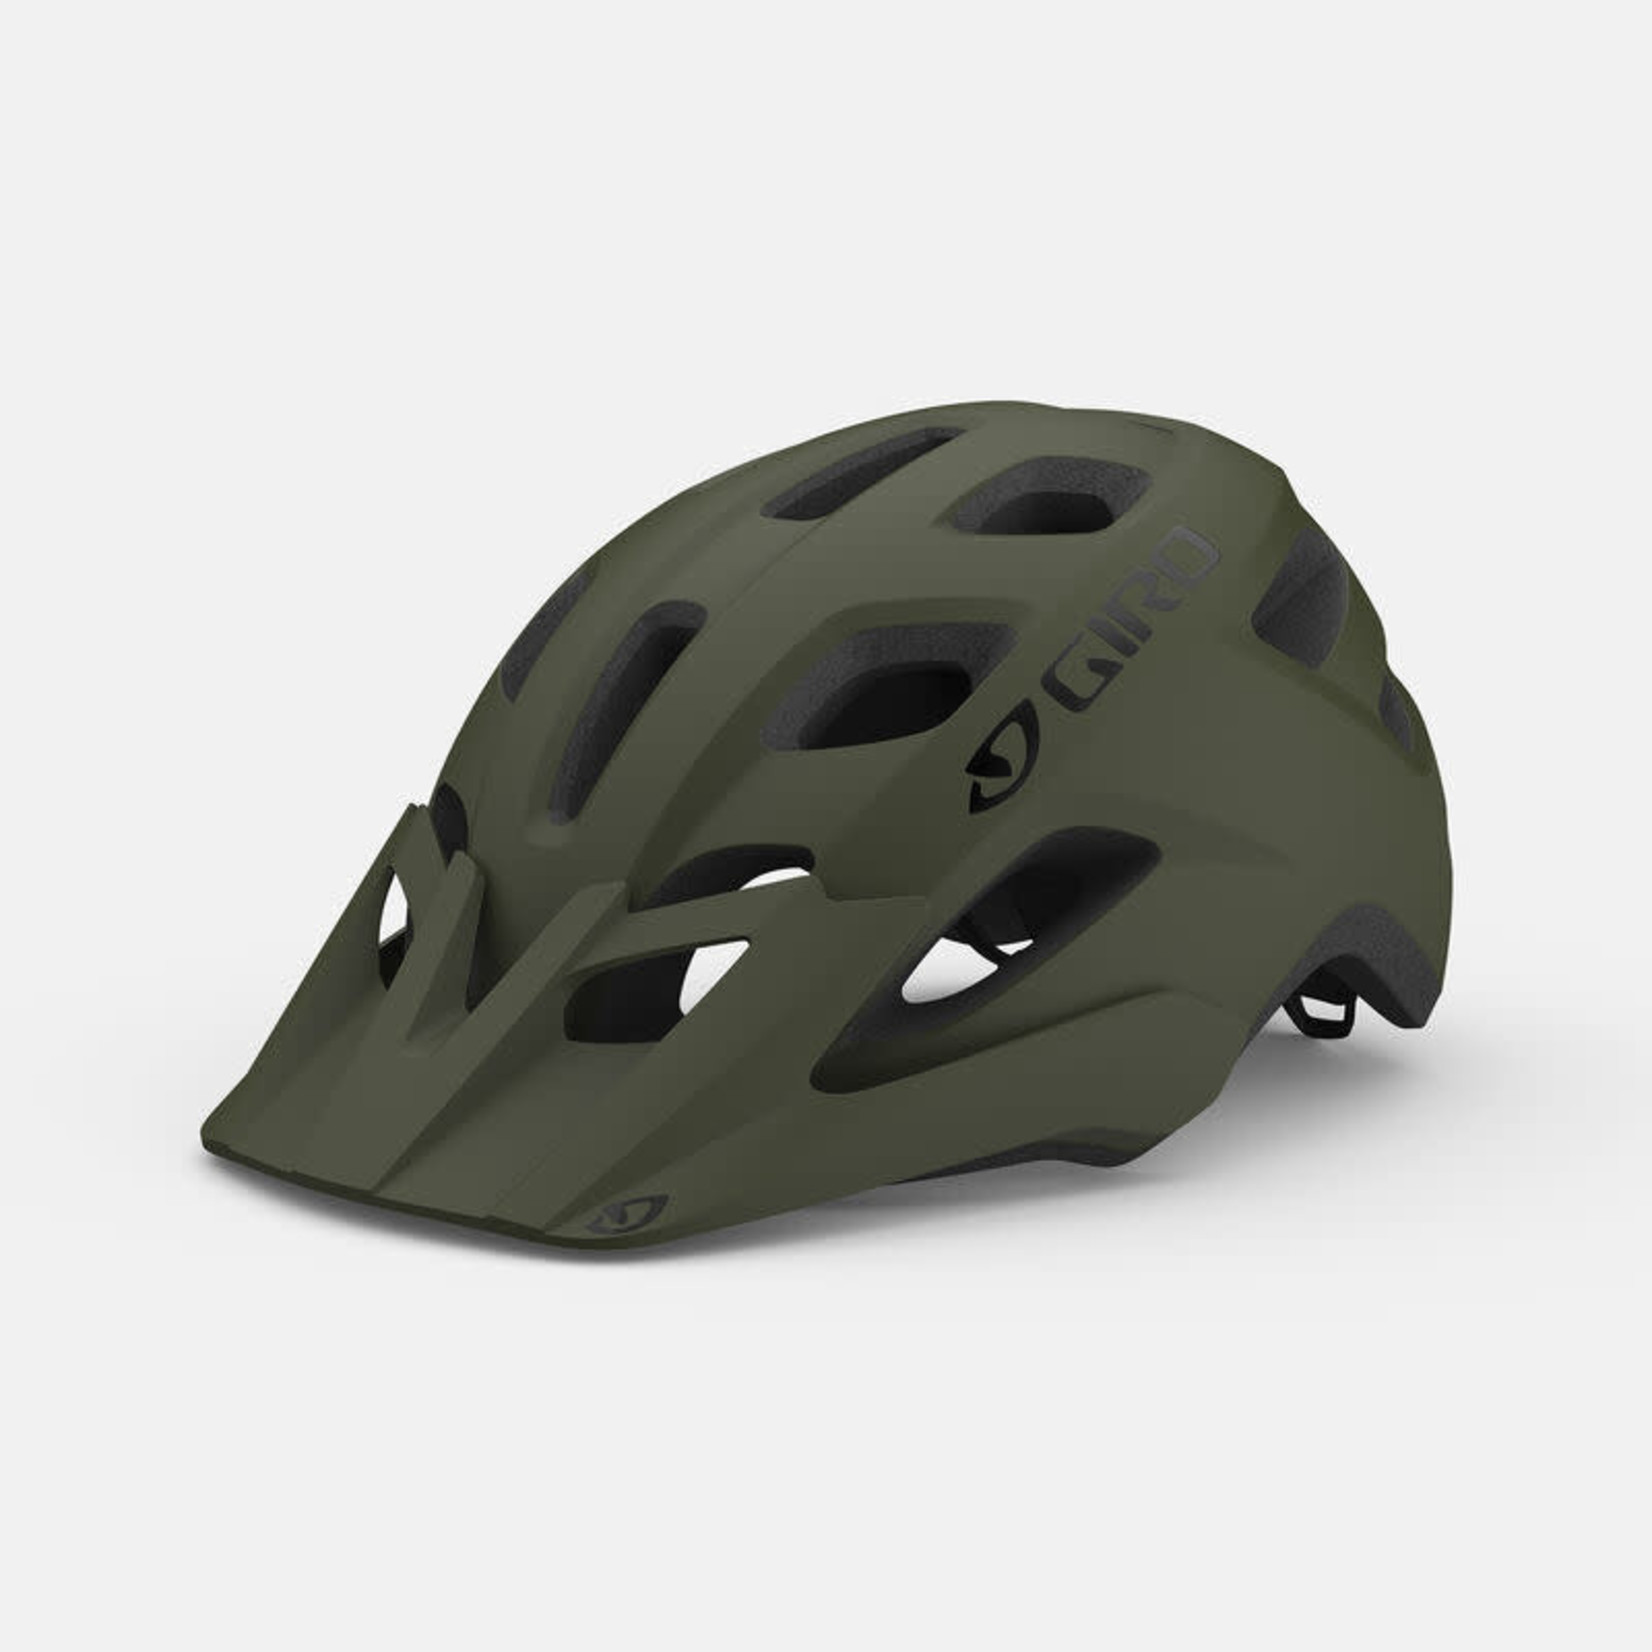 Giro Fixture Helmet - Universal Size